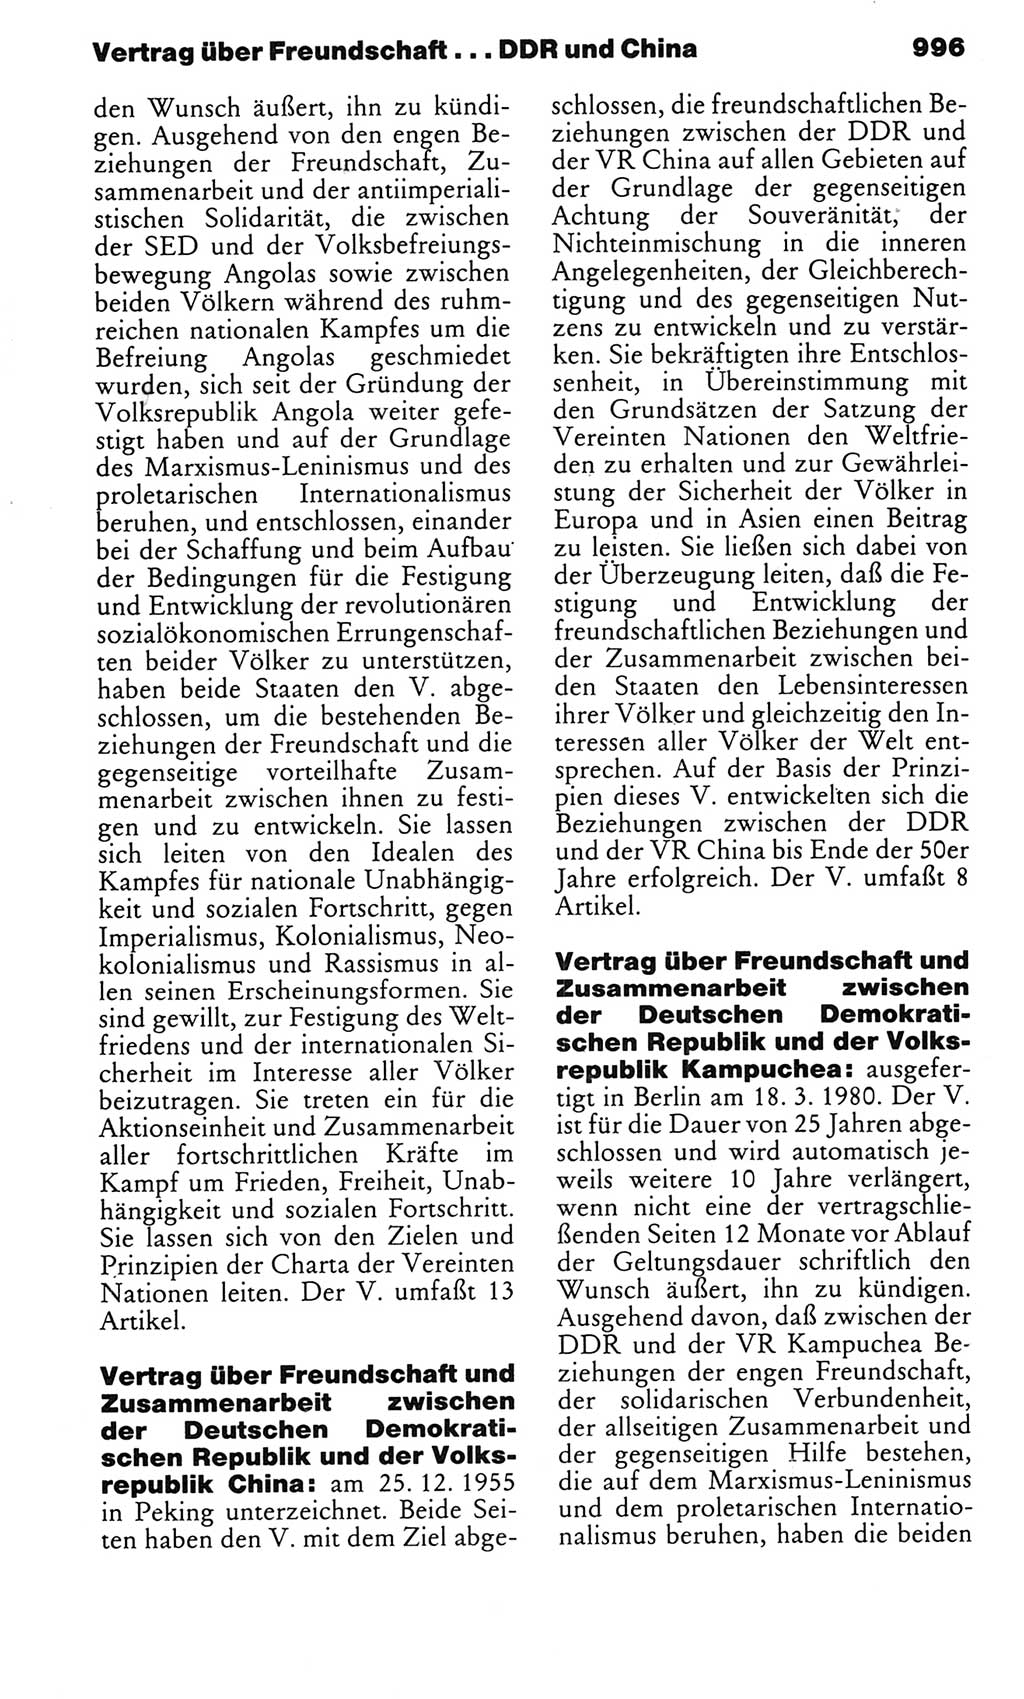 Kleines politisches Wörterbuch [Deutsche Demokratische Republik (DDR)] 1983, Seite 996 (Kl. pol. Wb. DDR 1983, S. 996)